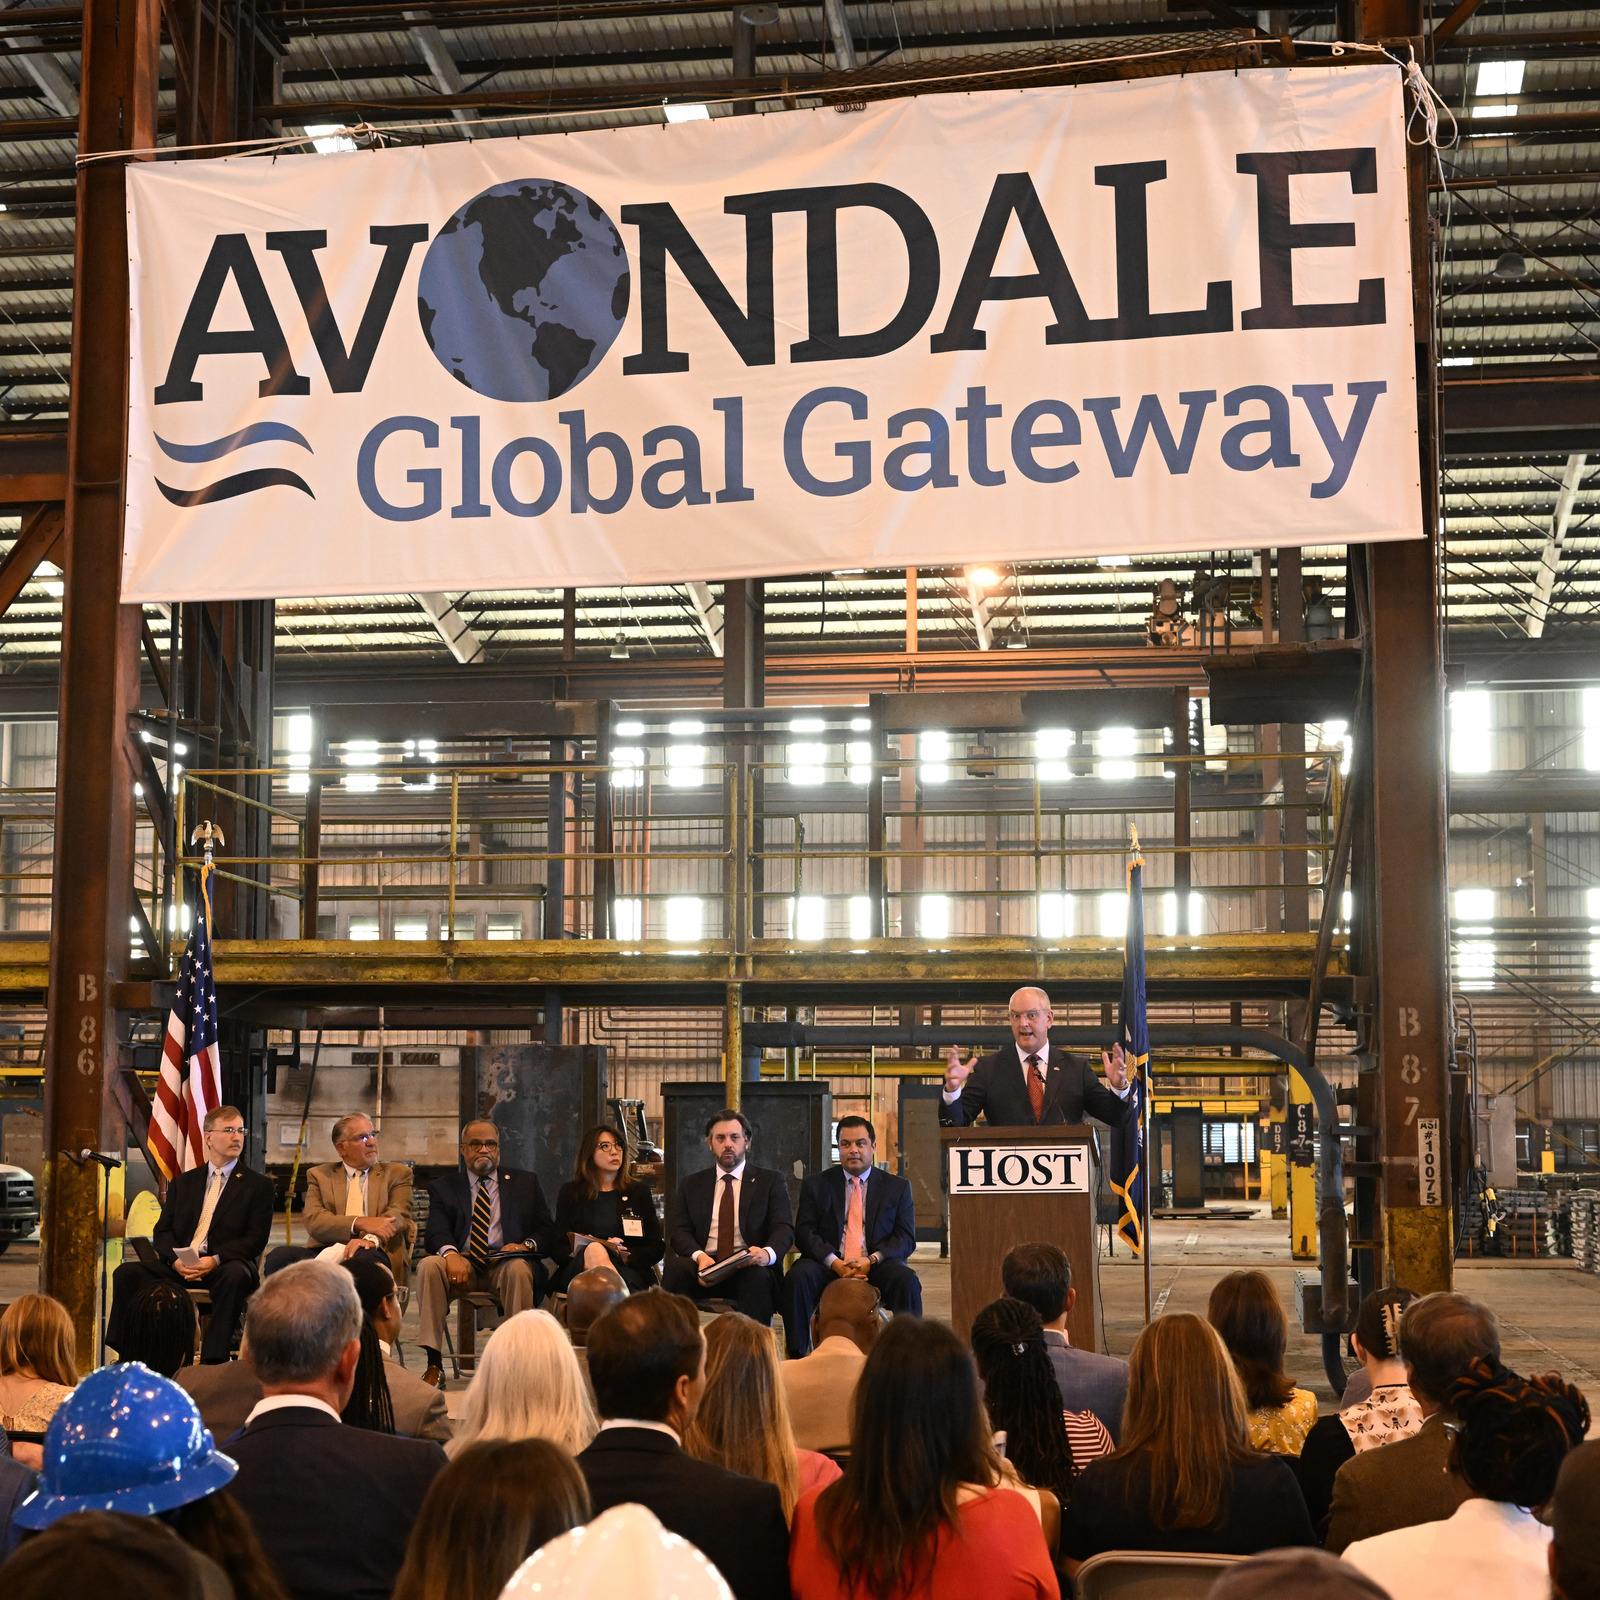 Avondale Global Gateway press conference